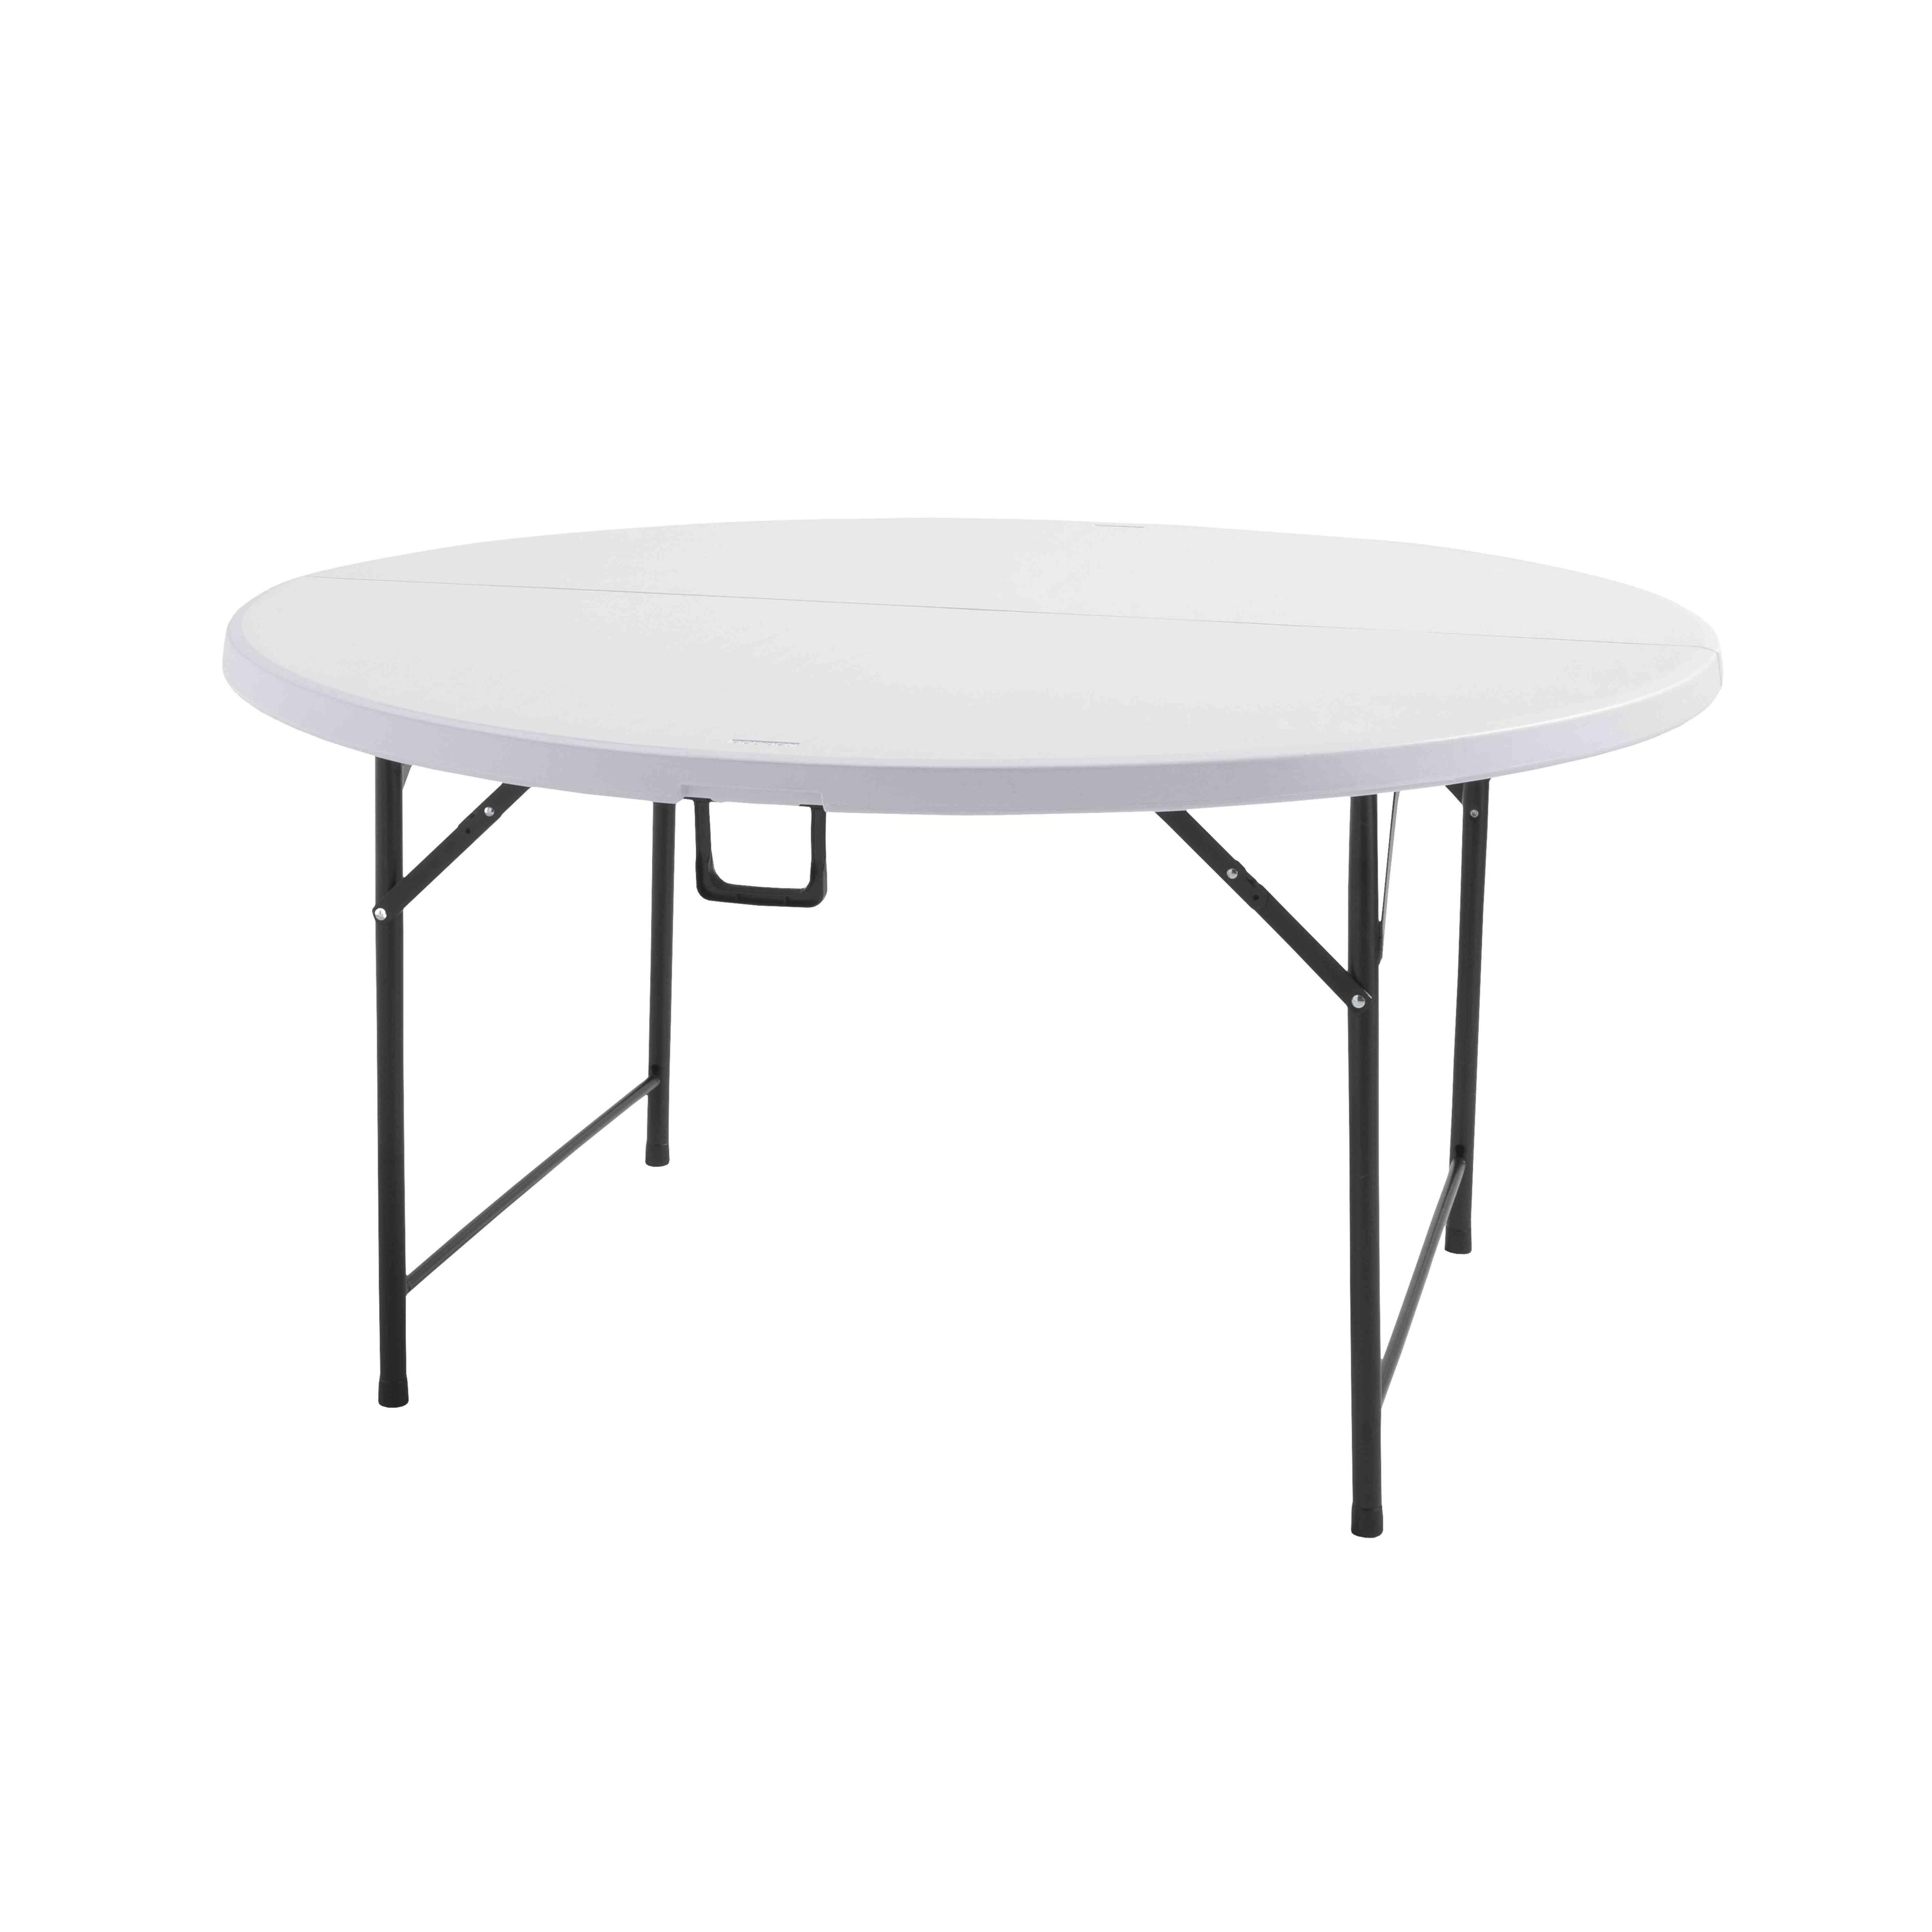 Housse élastique blanche de 244 cm pour table pliante